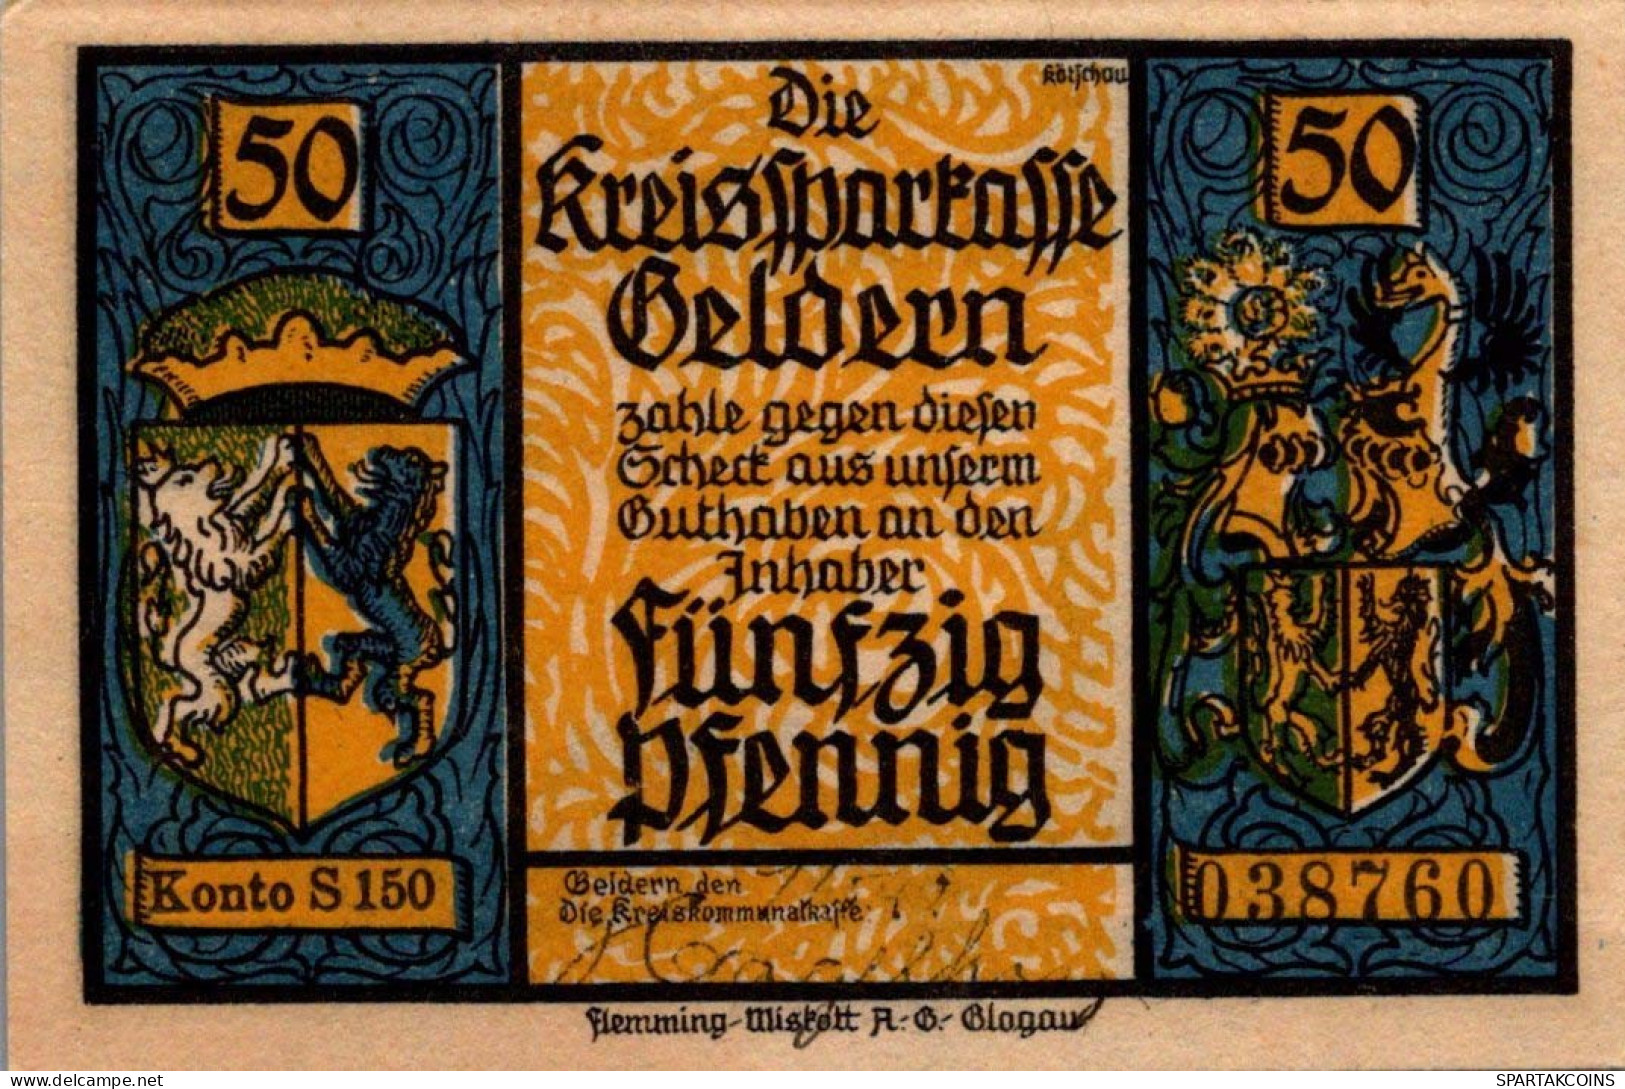 50 PFENNIG 1922 Stadt GELDERN Rhine UNC DEUTSCHLAND Notgeld Banknote #PH637 - [11] Lokale Uitgaven